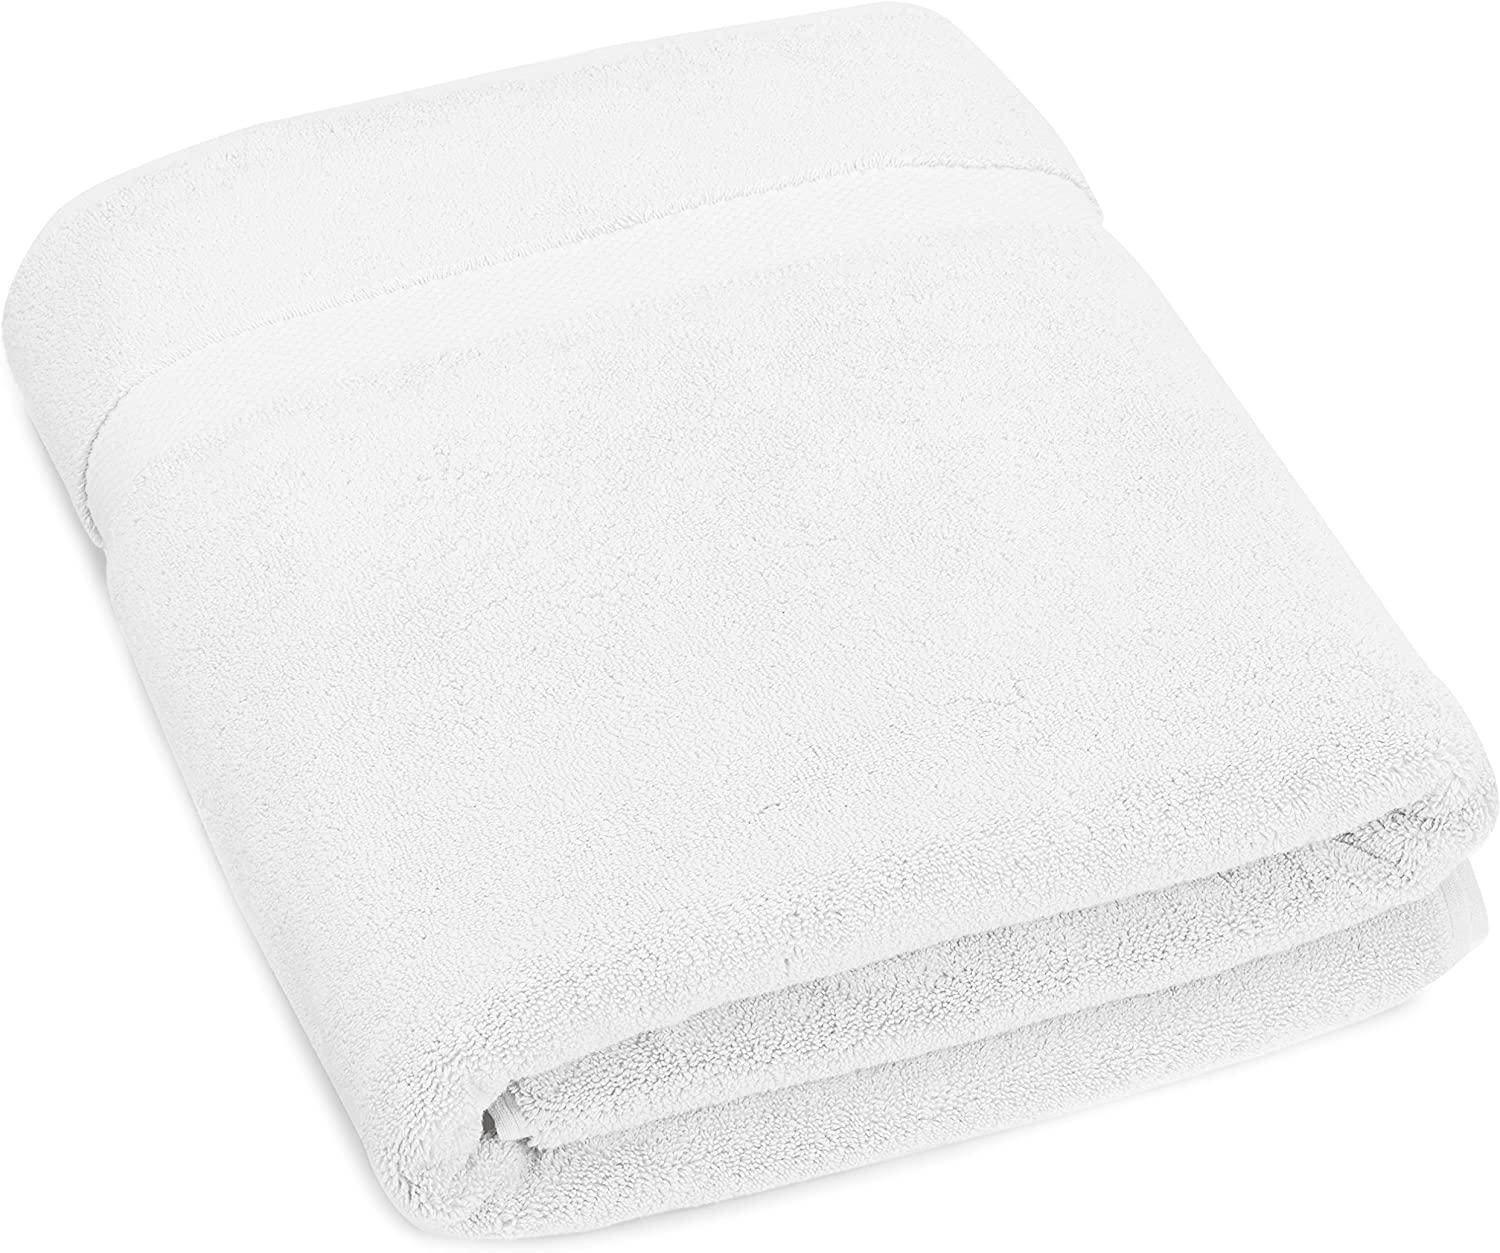 Pinzon Certified Quick-Dry Bath Towel